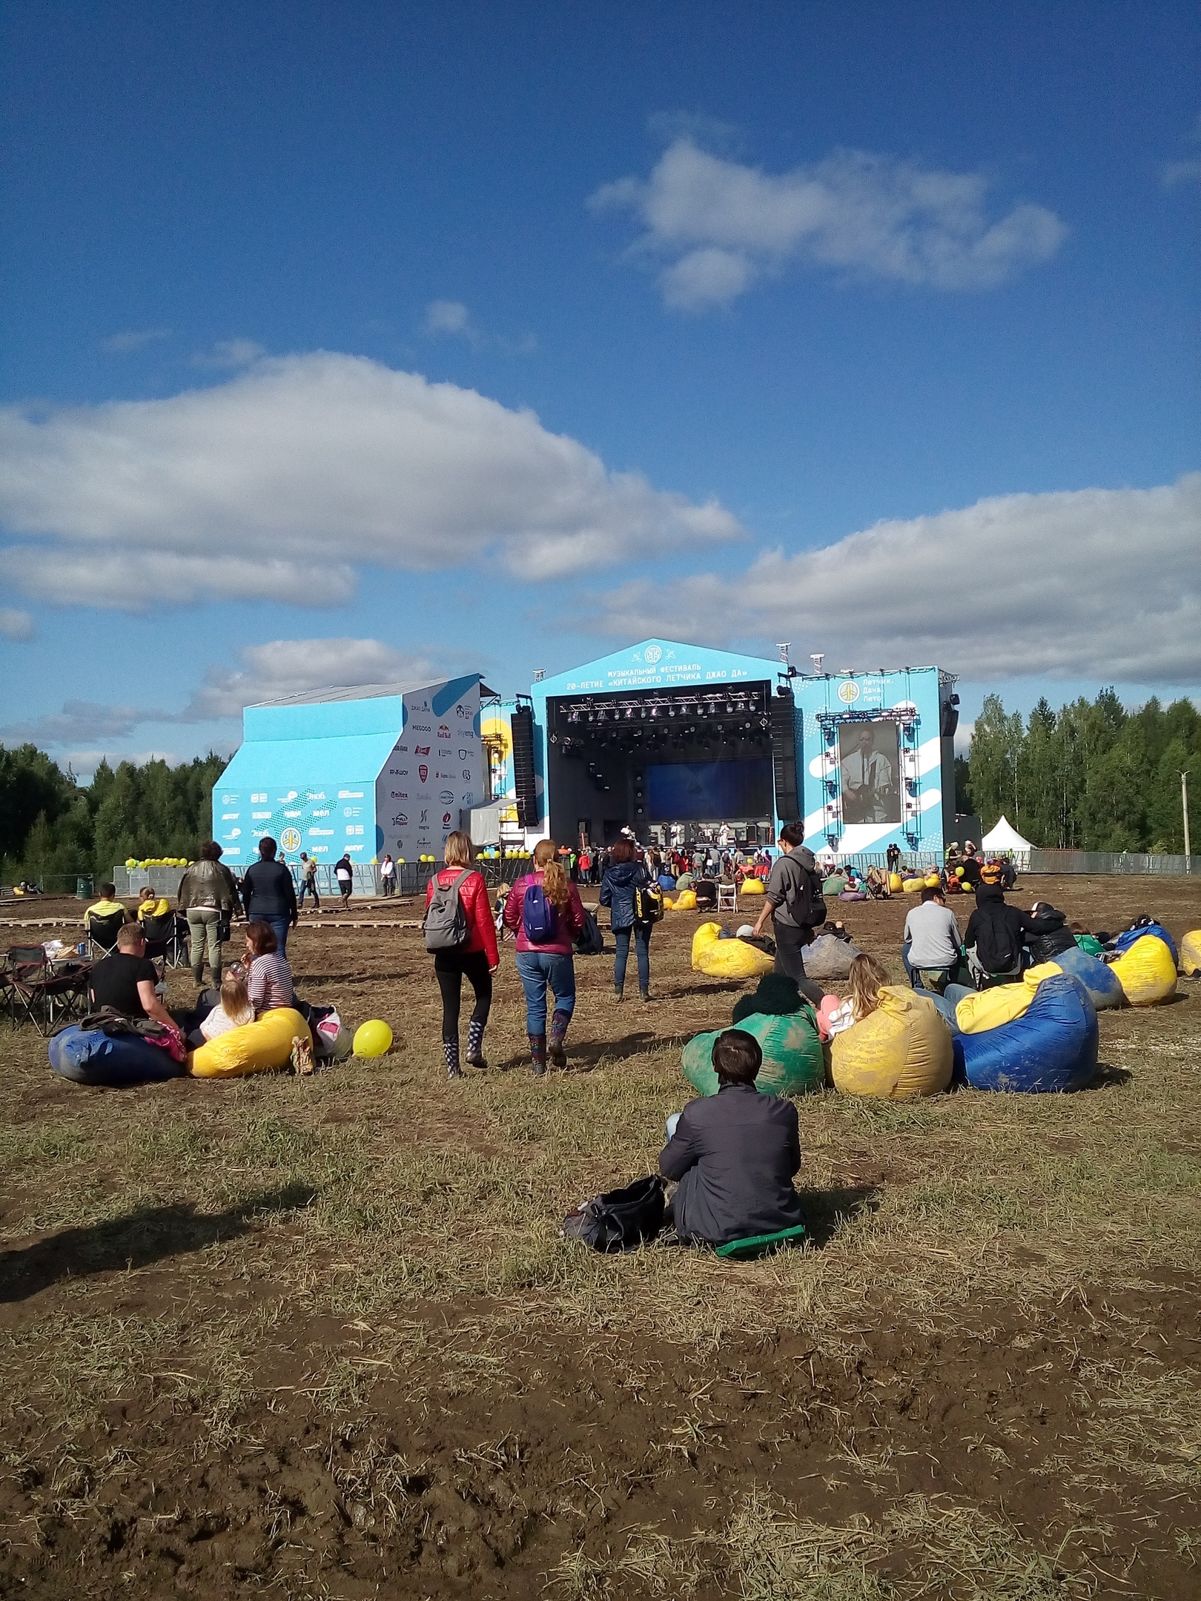 «Сплин», Дельфин, Noize MC выступили на фестивале в Ярославской области